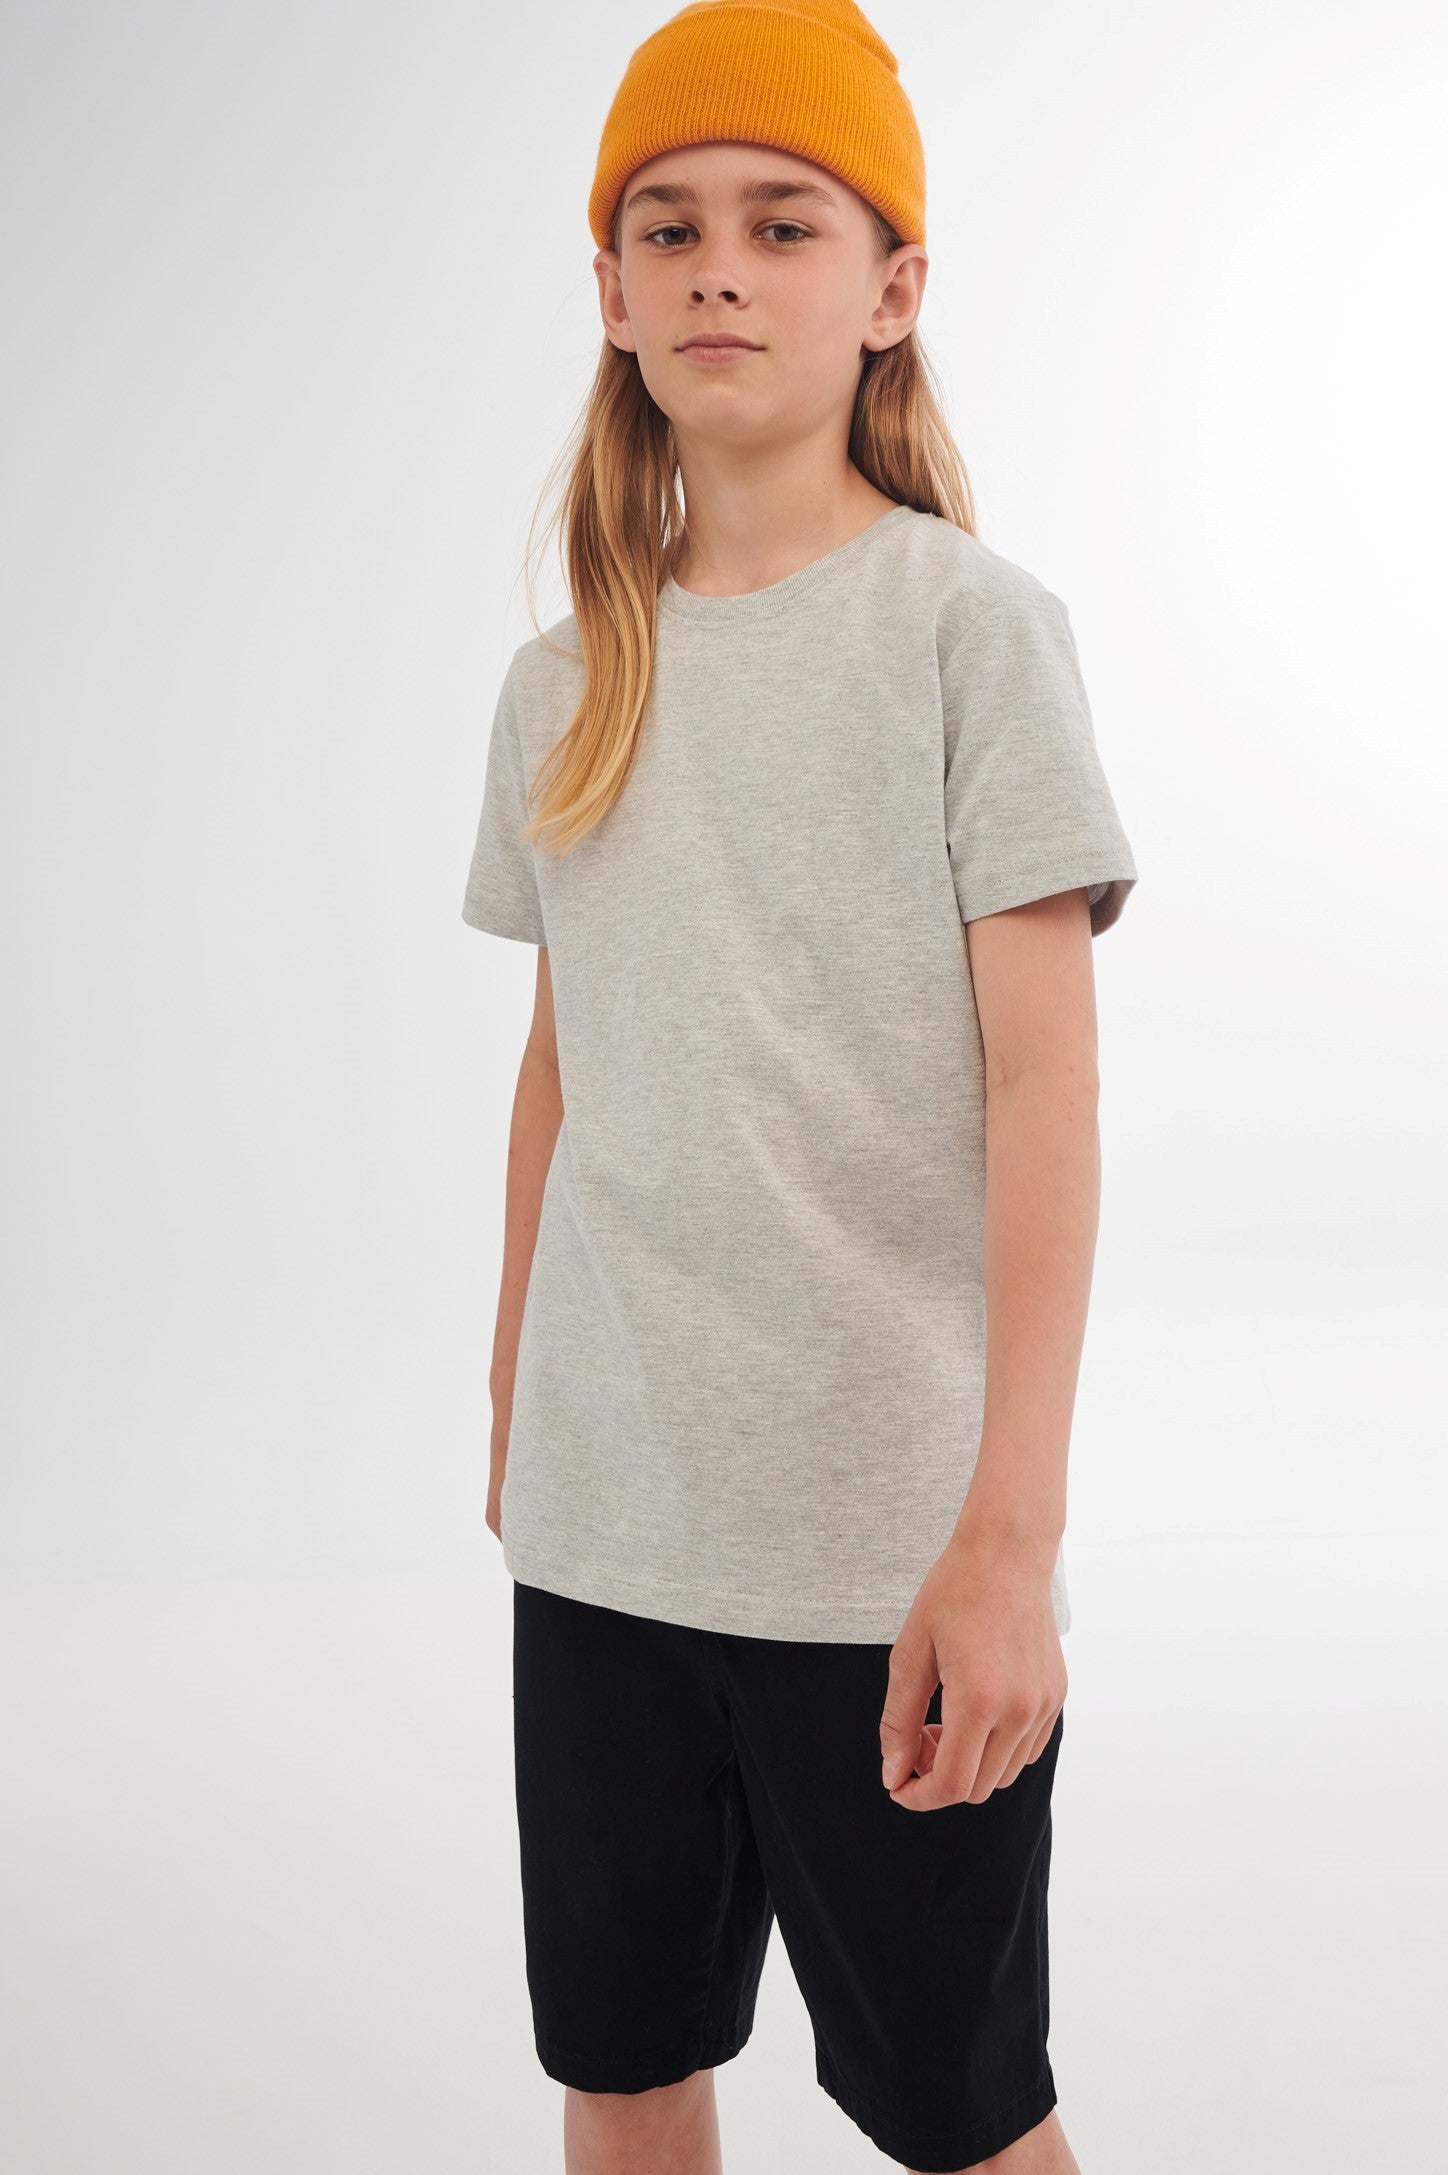 T-shirt en coton, 3/20$ - Ado garçon && MIX GRIS CLAIR